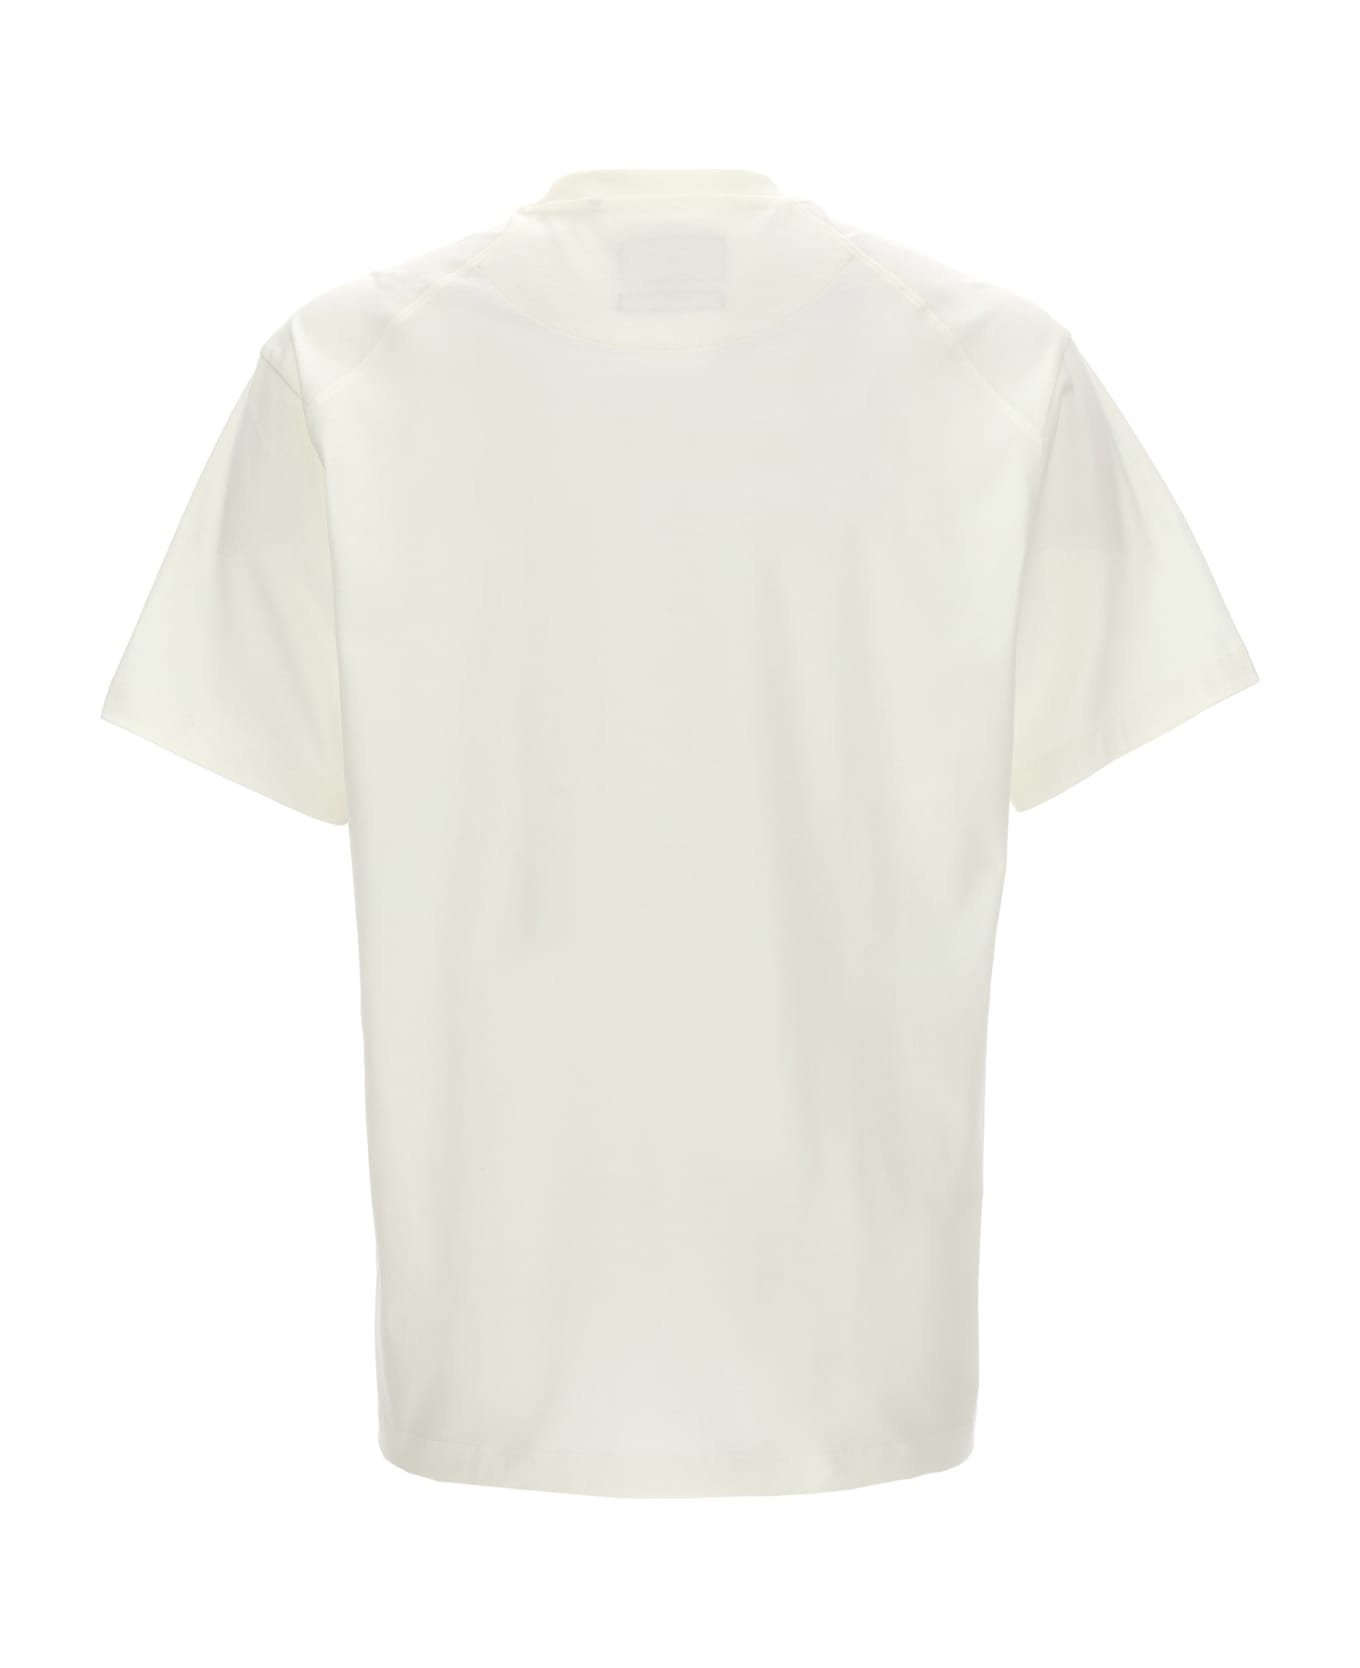 Y-3 'gfx' T-shirt - White/Black Tシャツ